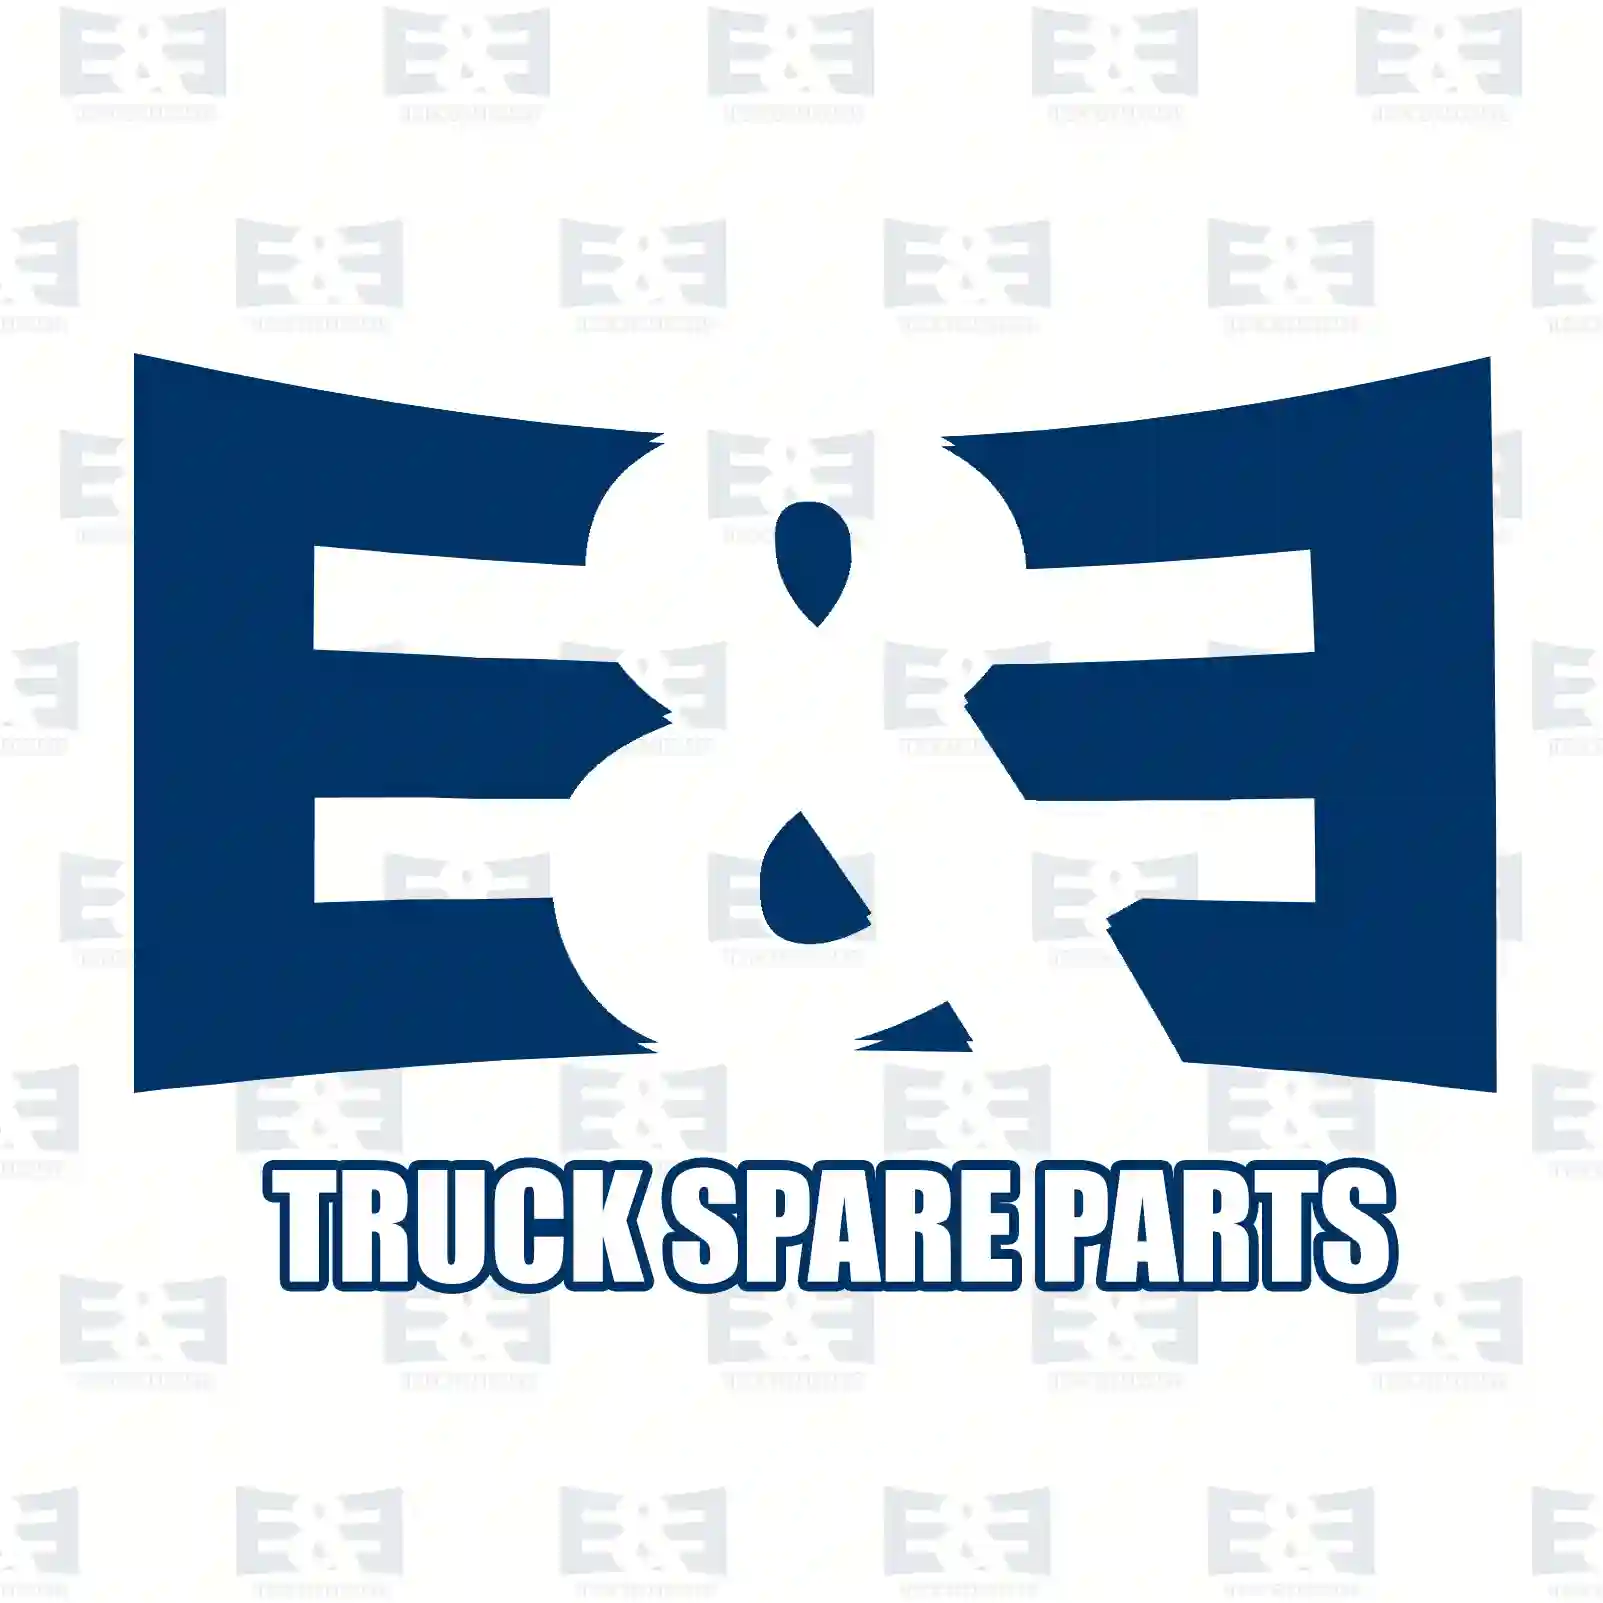 Cylinder head, compressor, complete, 2E2296521, 51541006041, 5154 ||  2E2296521 E&E Truck Spare Parts | Truck Spare Parts, Auotomotive Spare Parts Cylinder head, compressor, complete, 2E2296521, 51541006041, 5154 ||  2E2296521 E&E Truck Spare Parts | Truck Spare Parts, Auotomotive Spare Parts